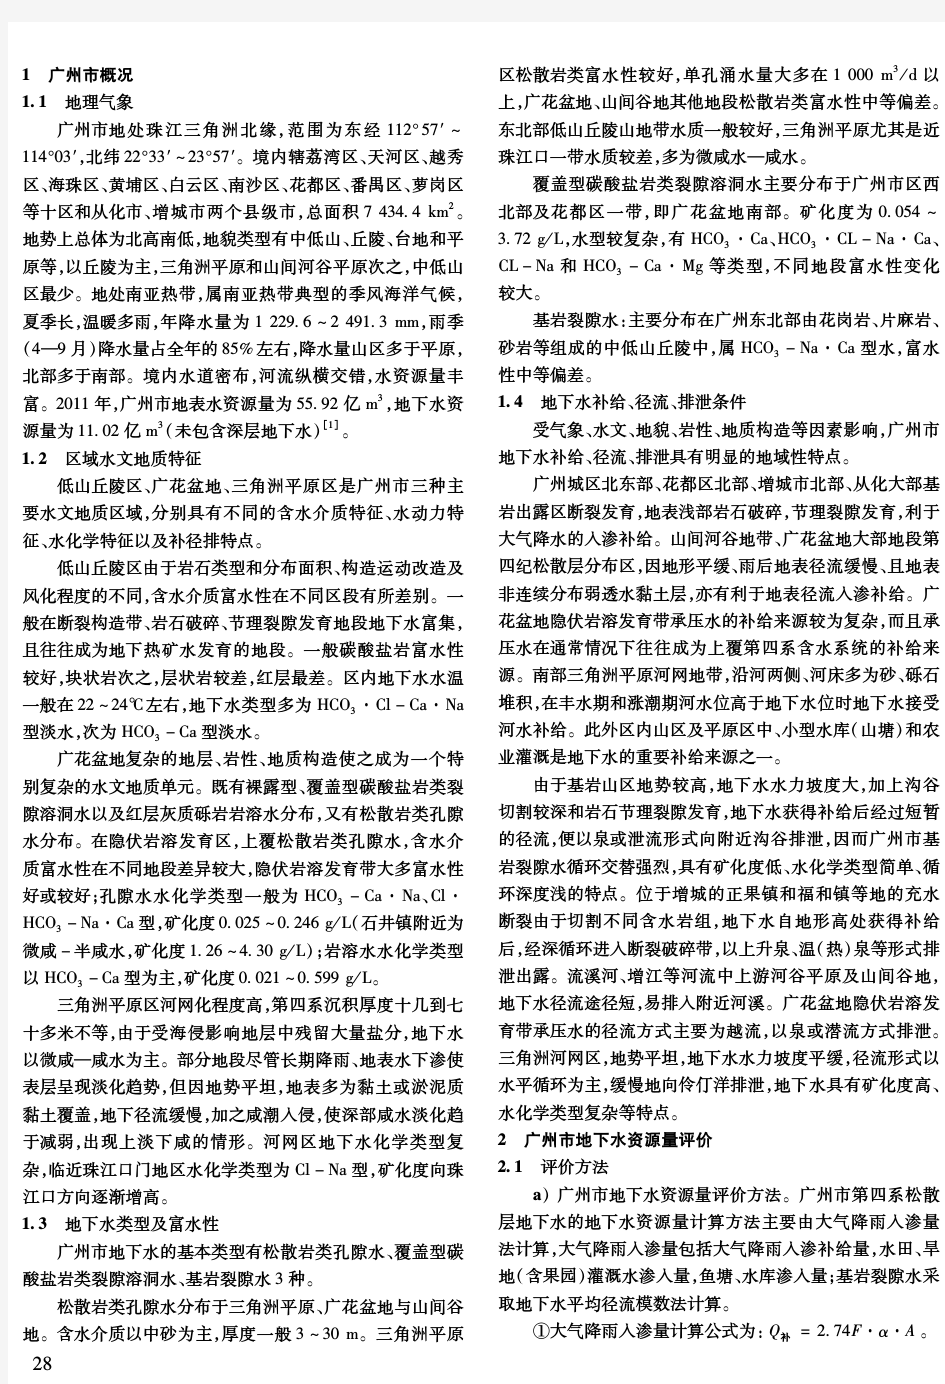 广州市地下水资源调查评价及其管理对策